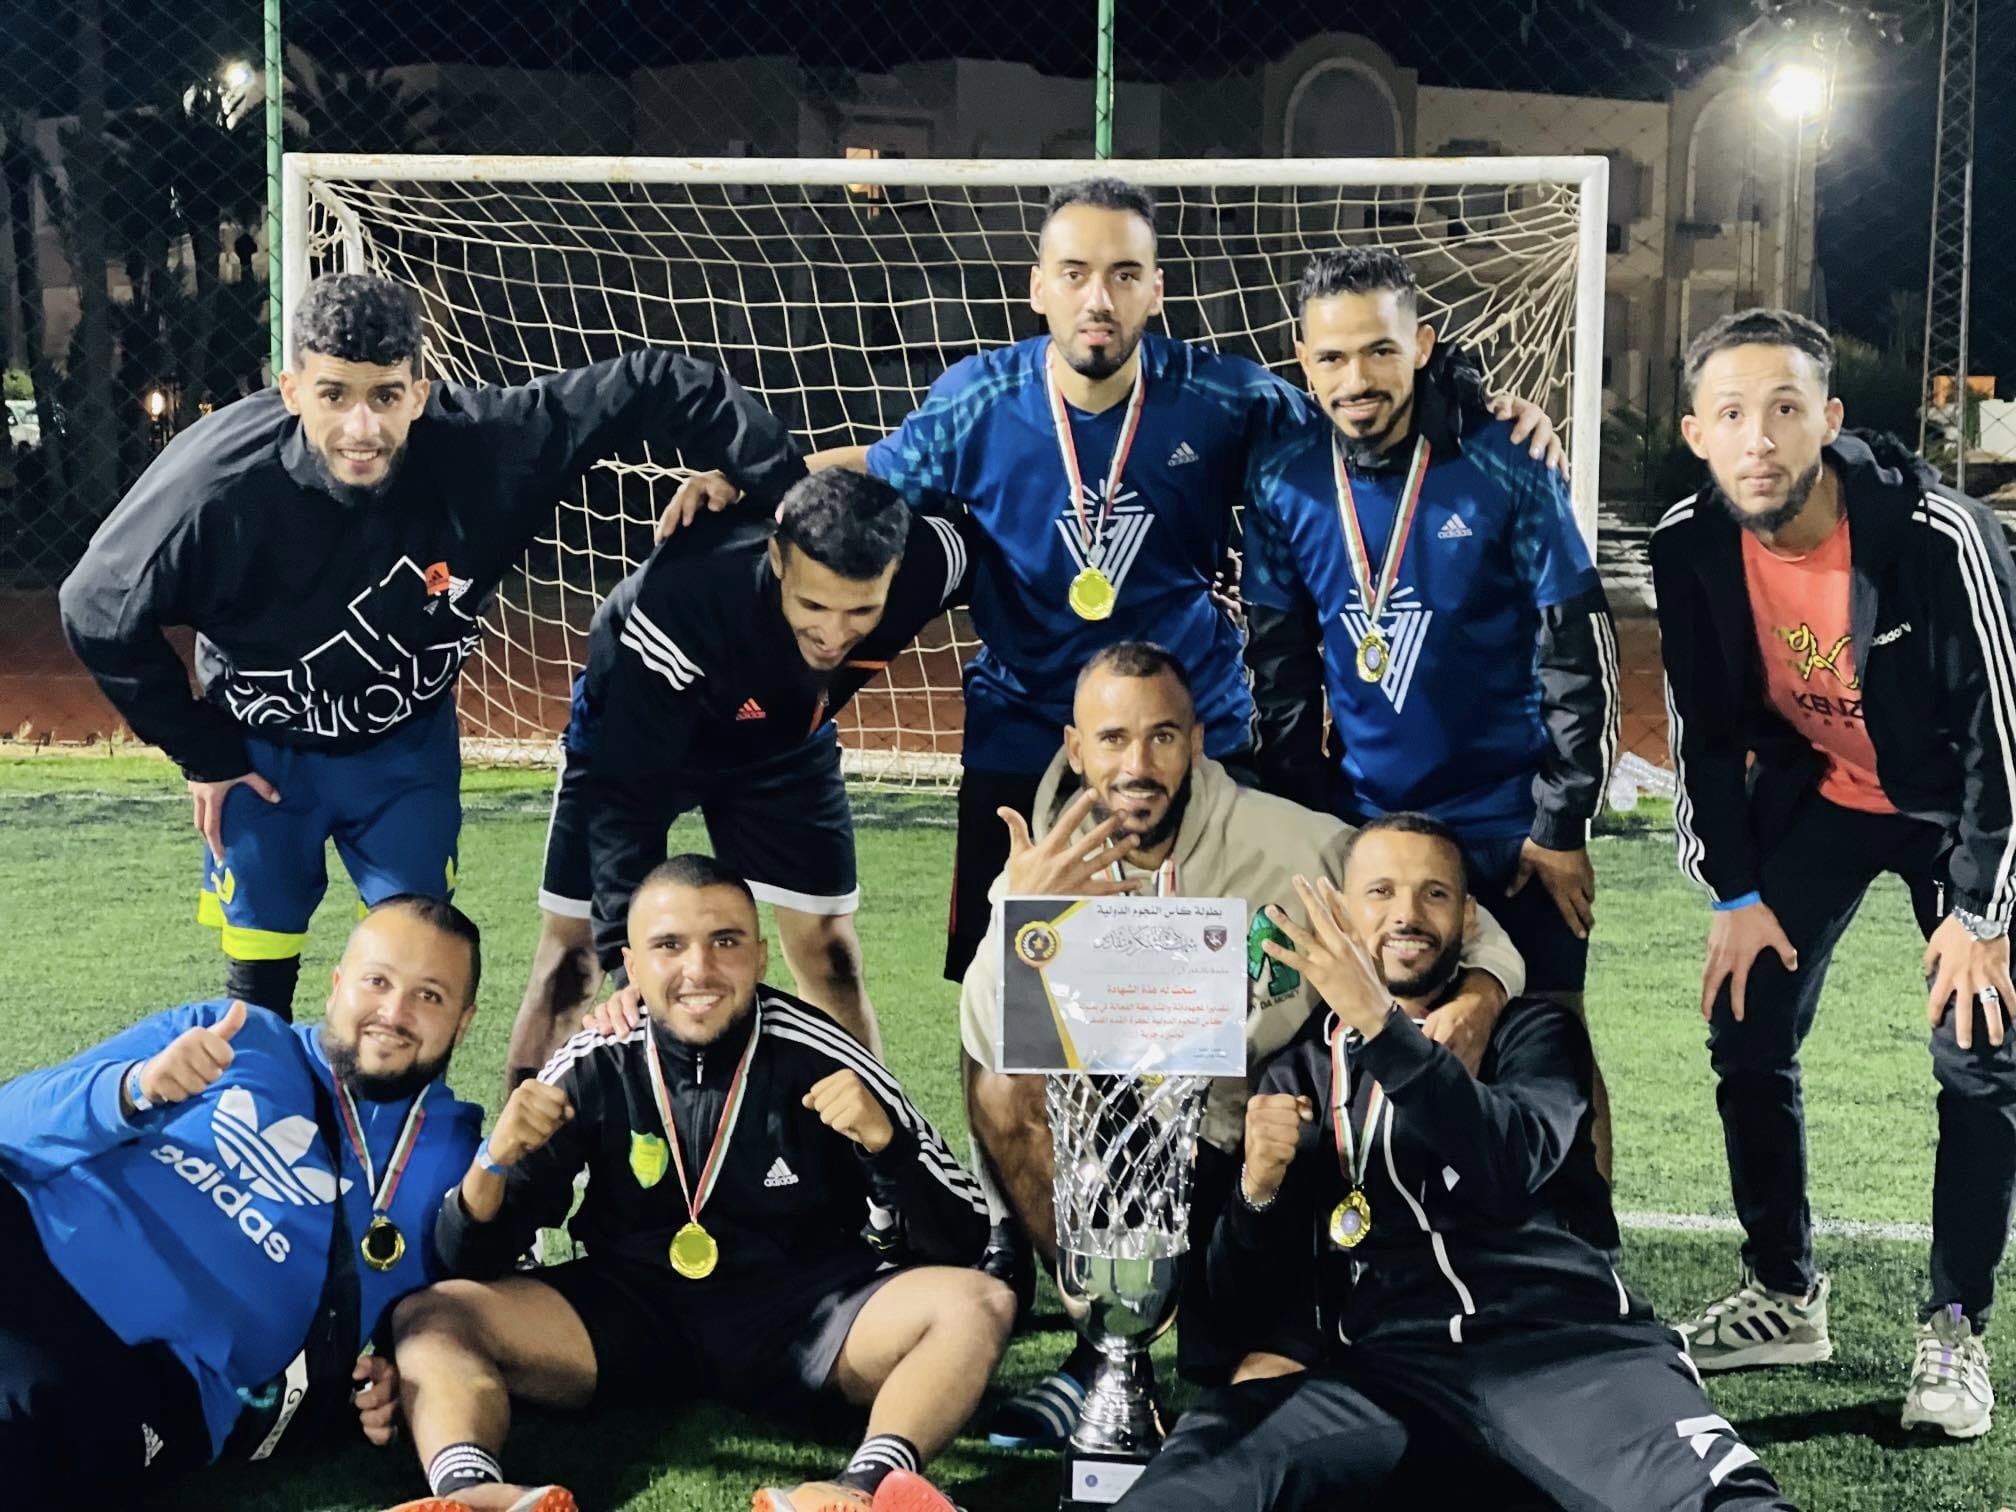 فريق الماراكانا غريان يتوج ببطولة كأس النجوم الدولية لكرة القدم المصغرة المقامة في تونس.